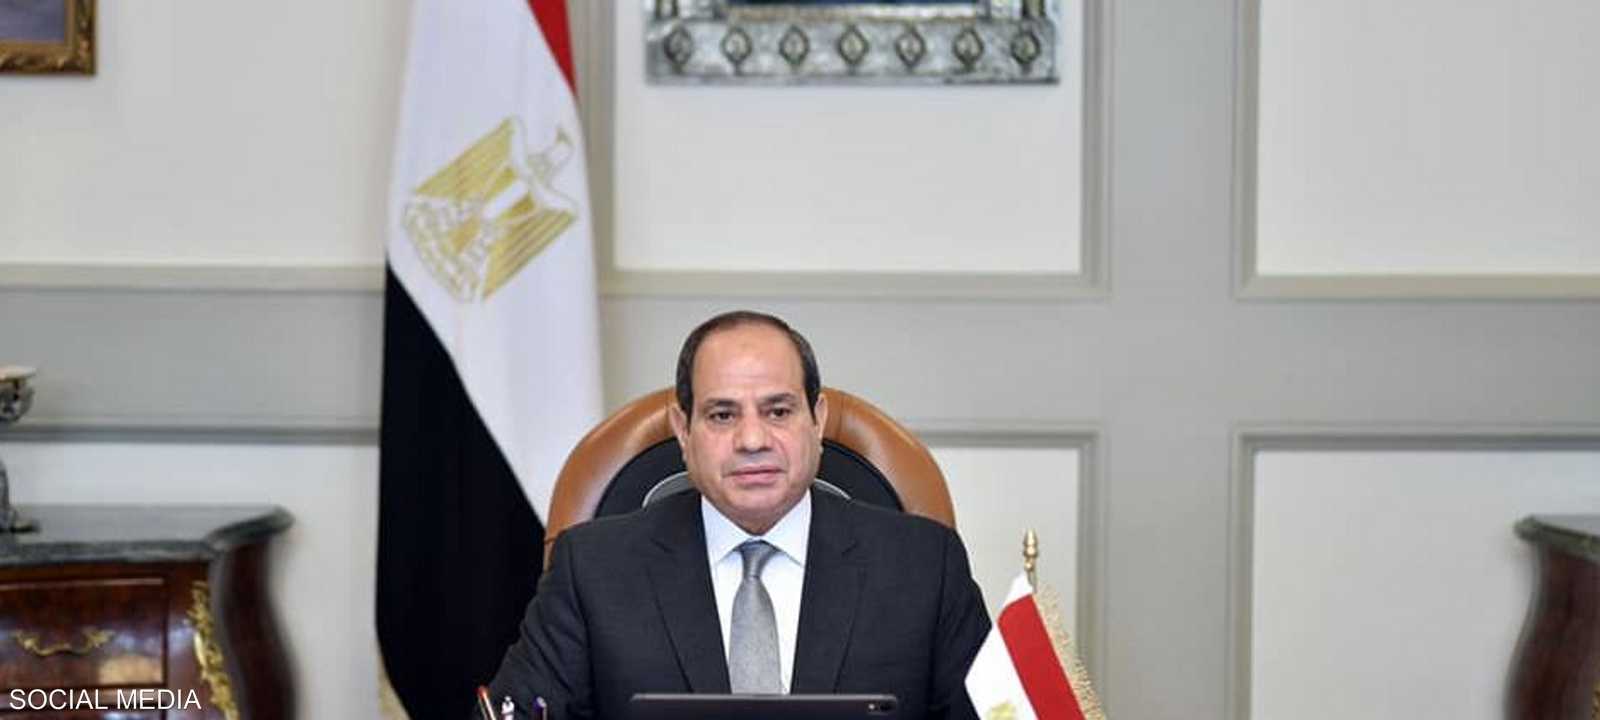 شدد السيسي على أن مصر "تدعم الشعب الفلسطيني وقادته"